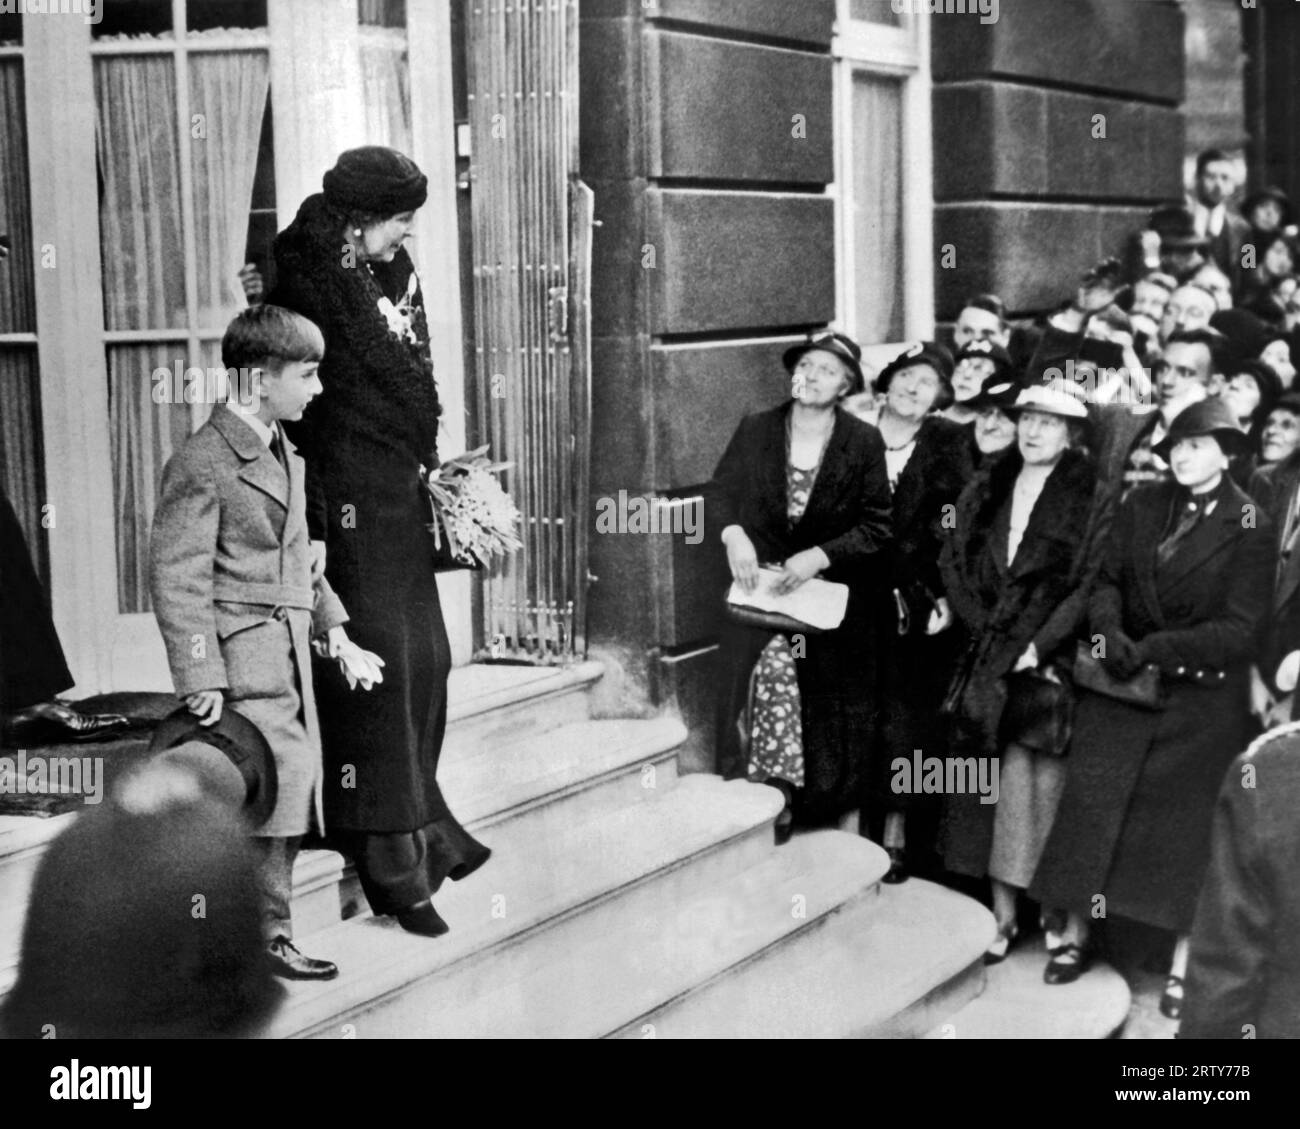 Londra, Inghilterra 16 ottobre 1934 il re undicenne Pietro di Jugoslavia lascia il suo hotel londinese con sua nonna, la regina madre Maria di Romania, per Marsiglia, dove incontra sua madre, la regina madre Maria di Jugoslavia, alla cerimonia del padre, il re assassinato Alessandro. Foto Stock